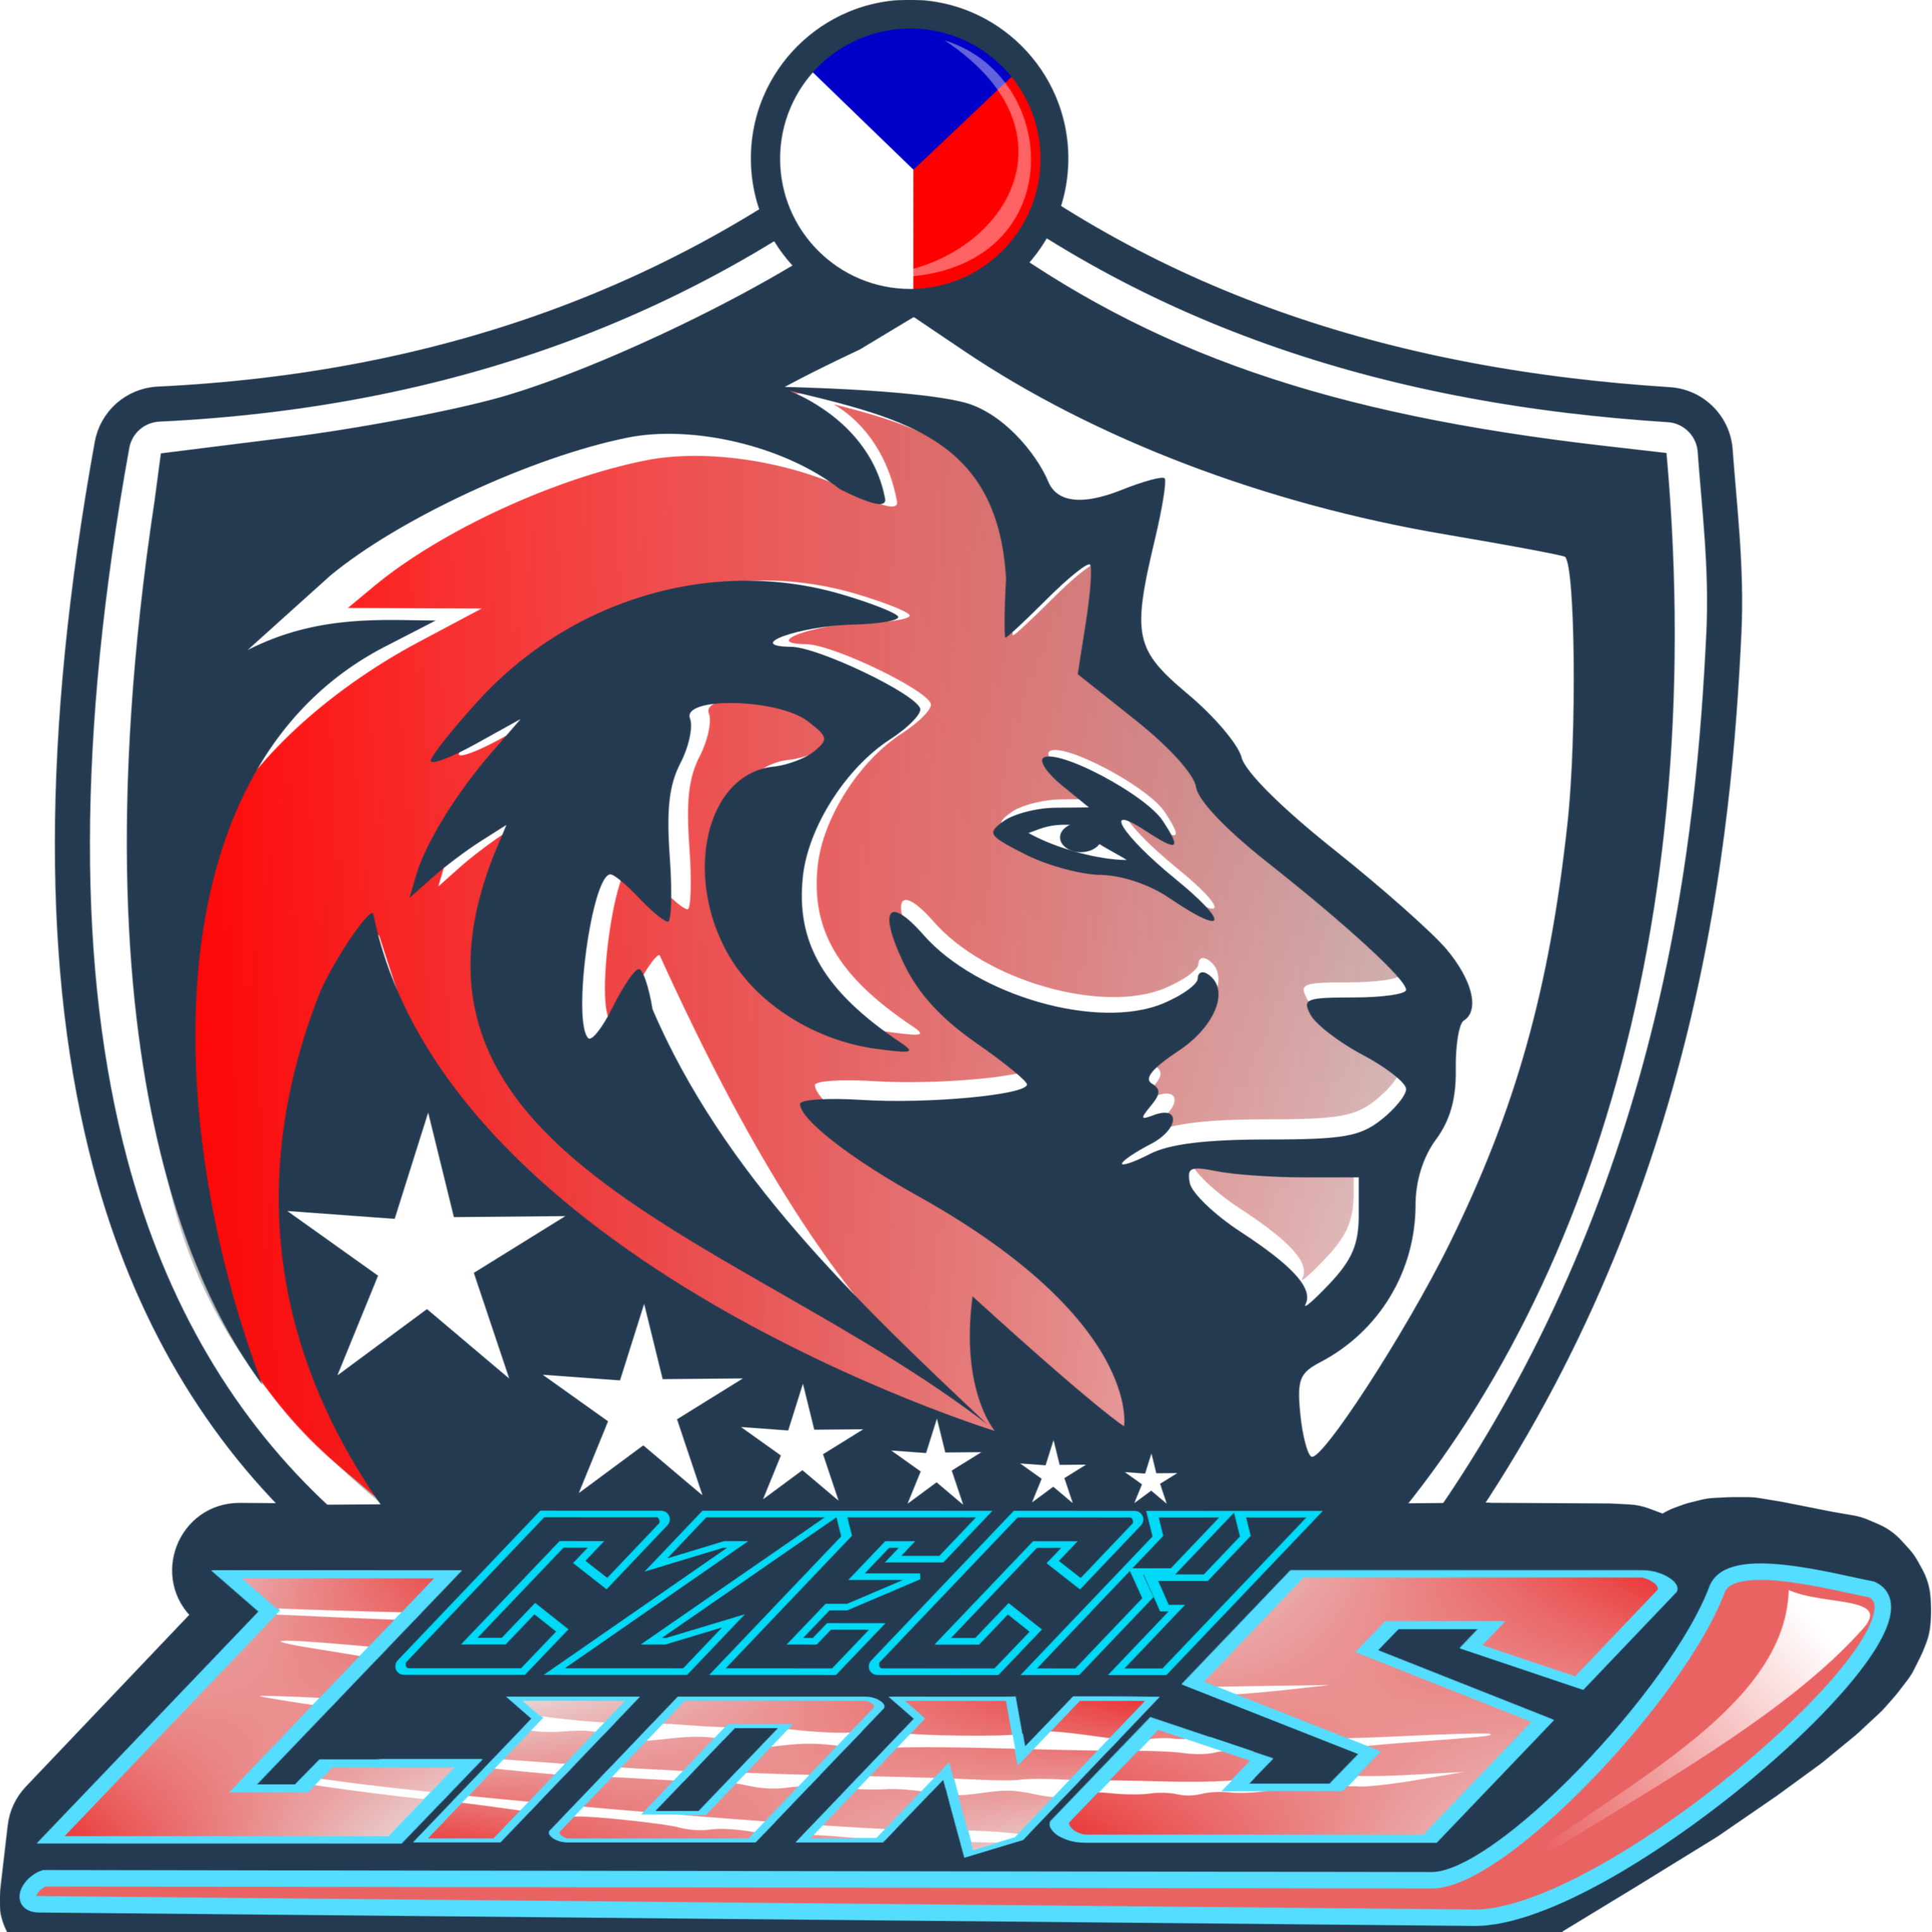 Czechs Lions (DNF)